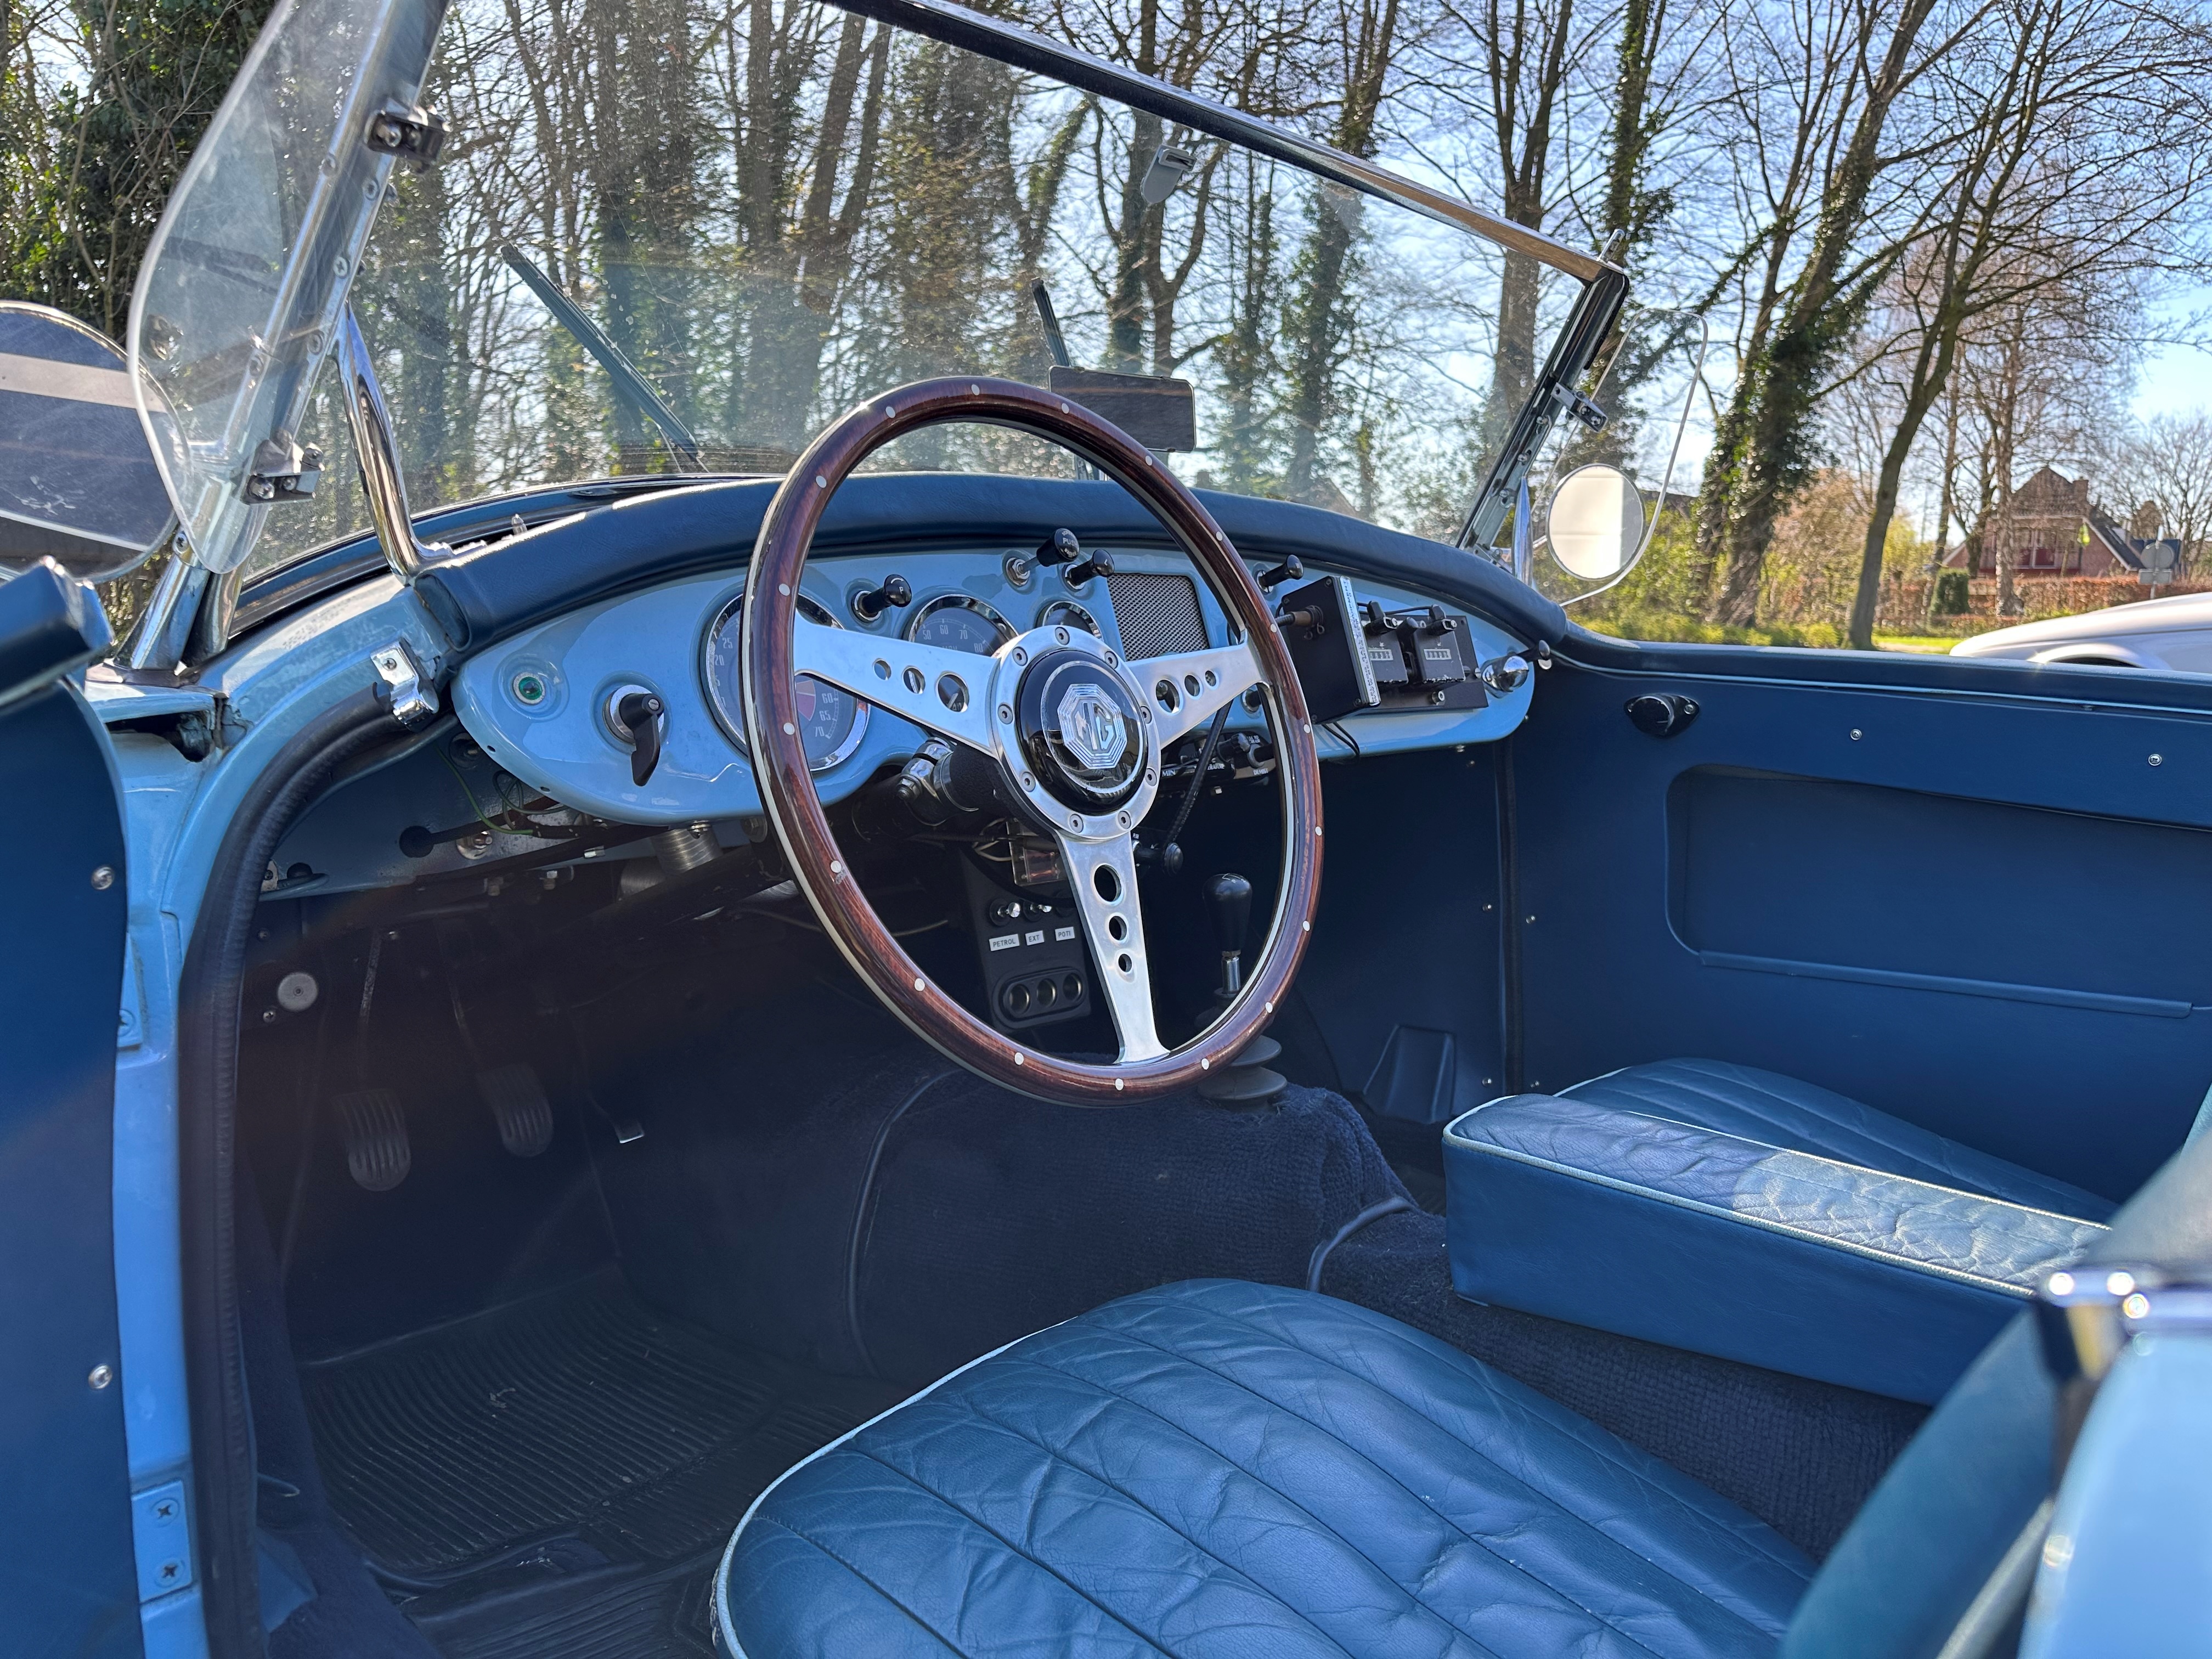 1958 MG A 1500 / Concoursstaat oldtimer te koop